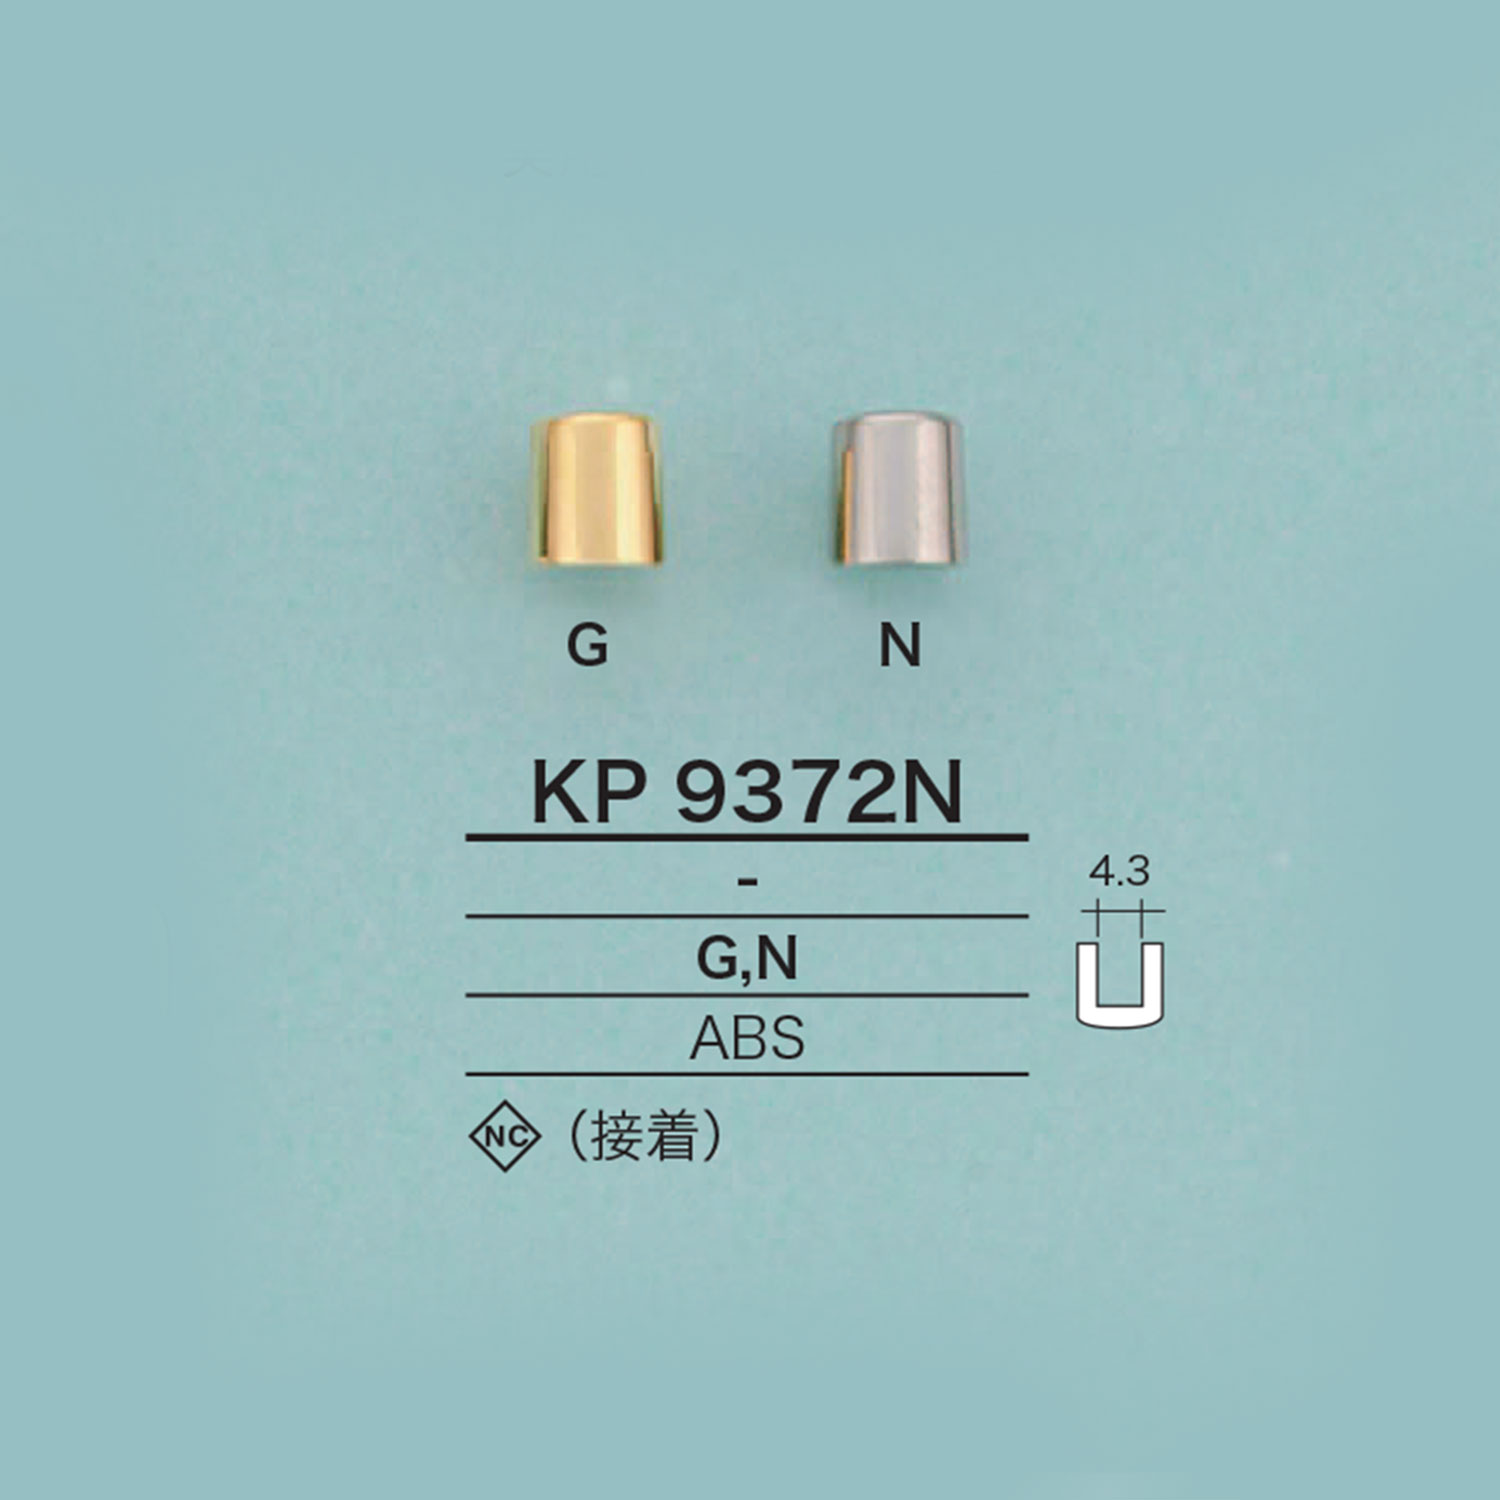 KP9372N Zylindrisches Kabelende (Plattierung)[Schnallen Und Ring] IRIS